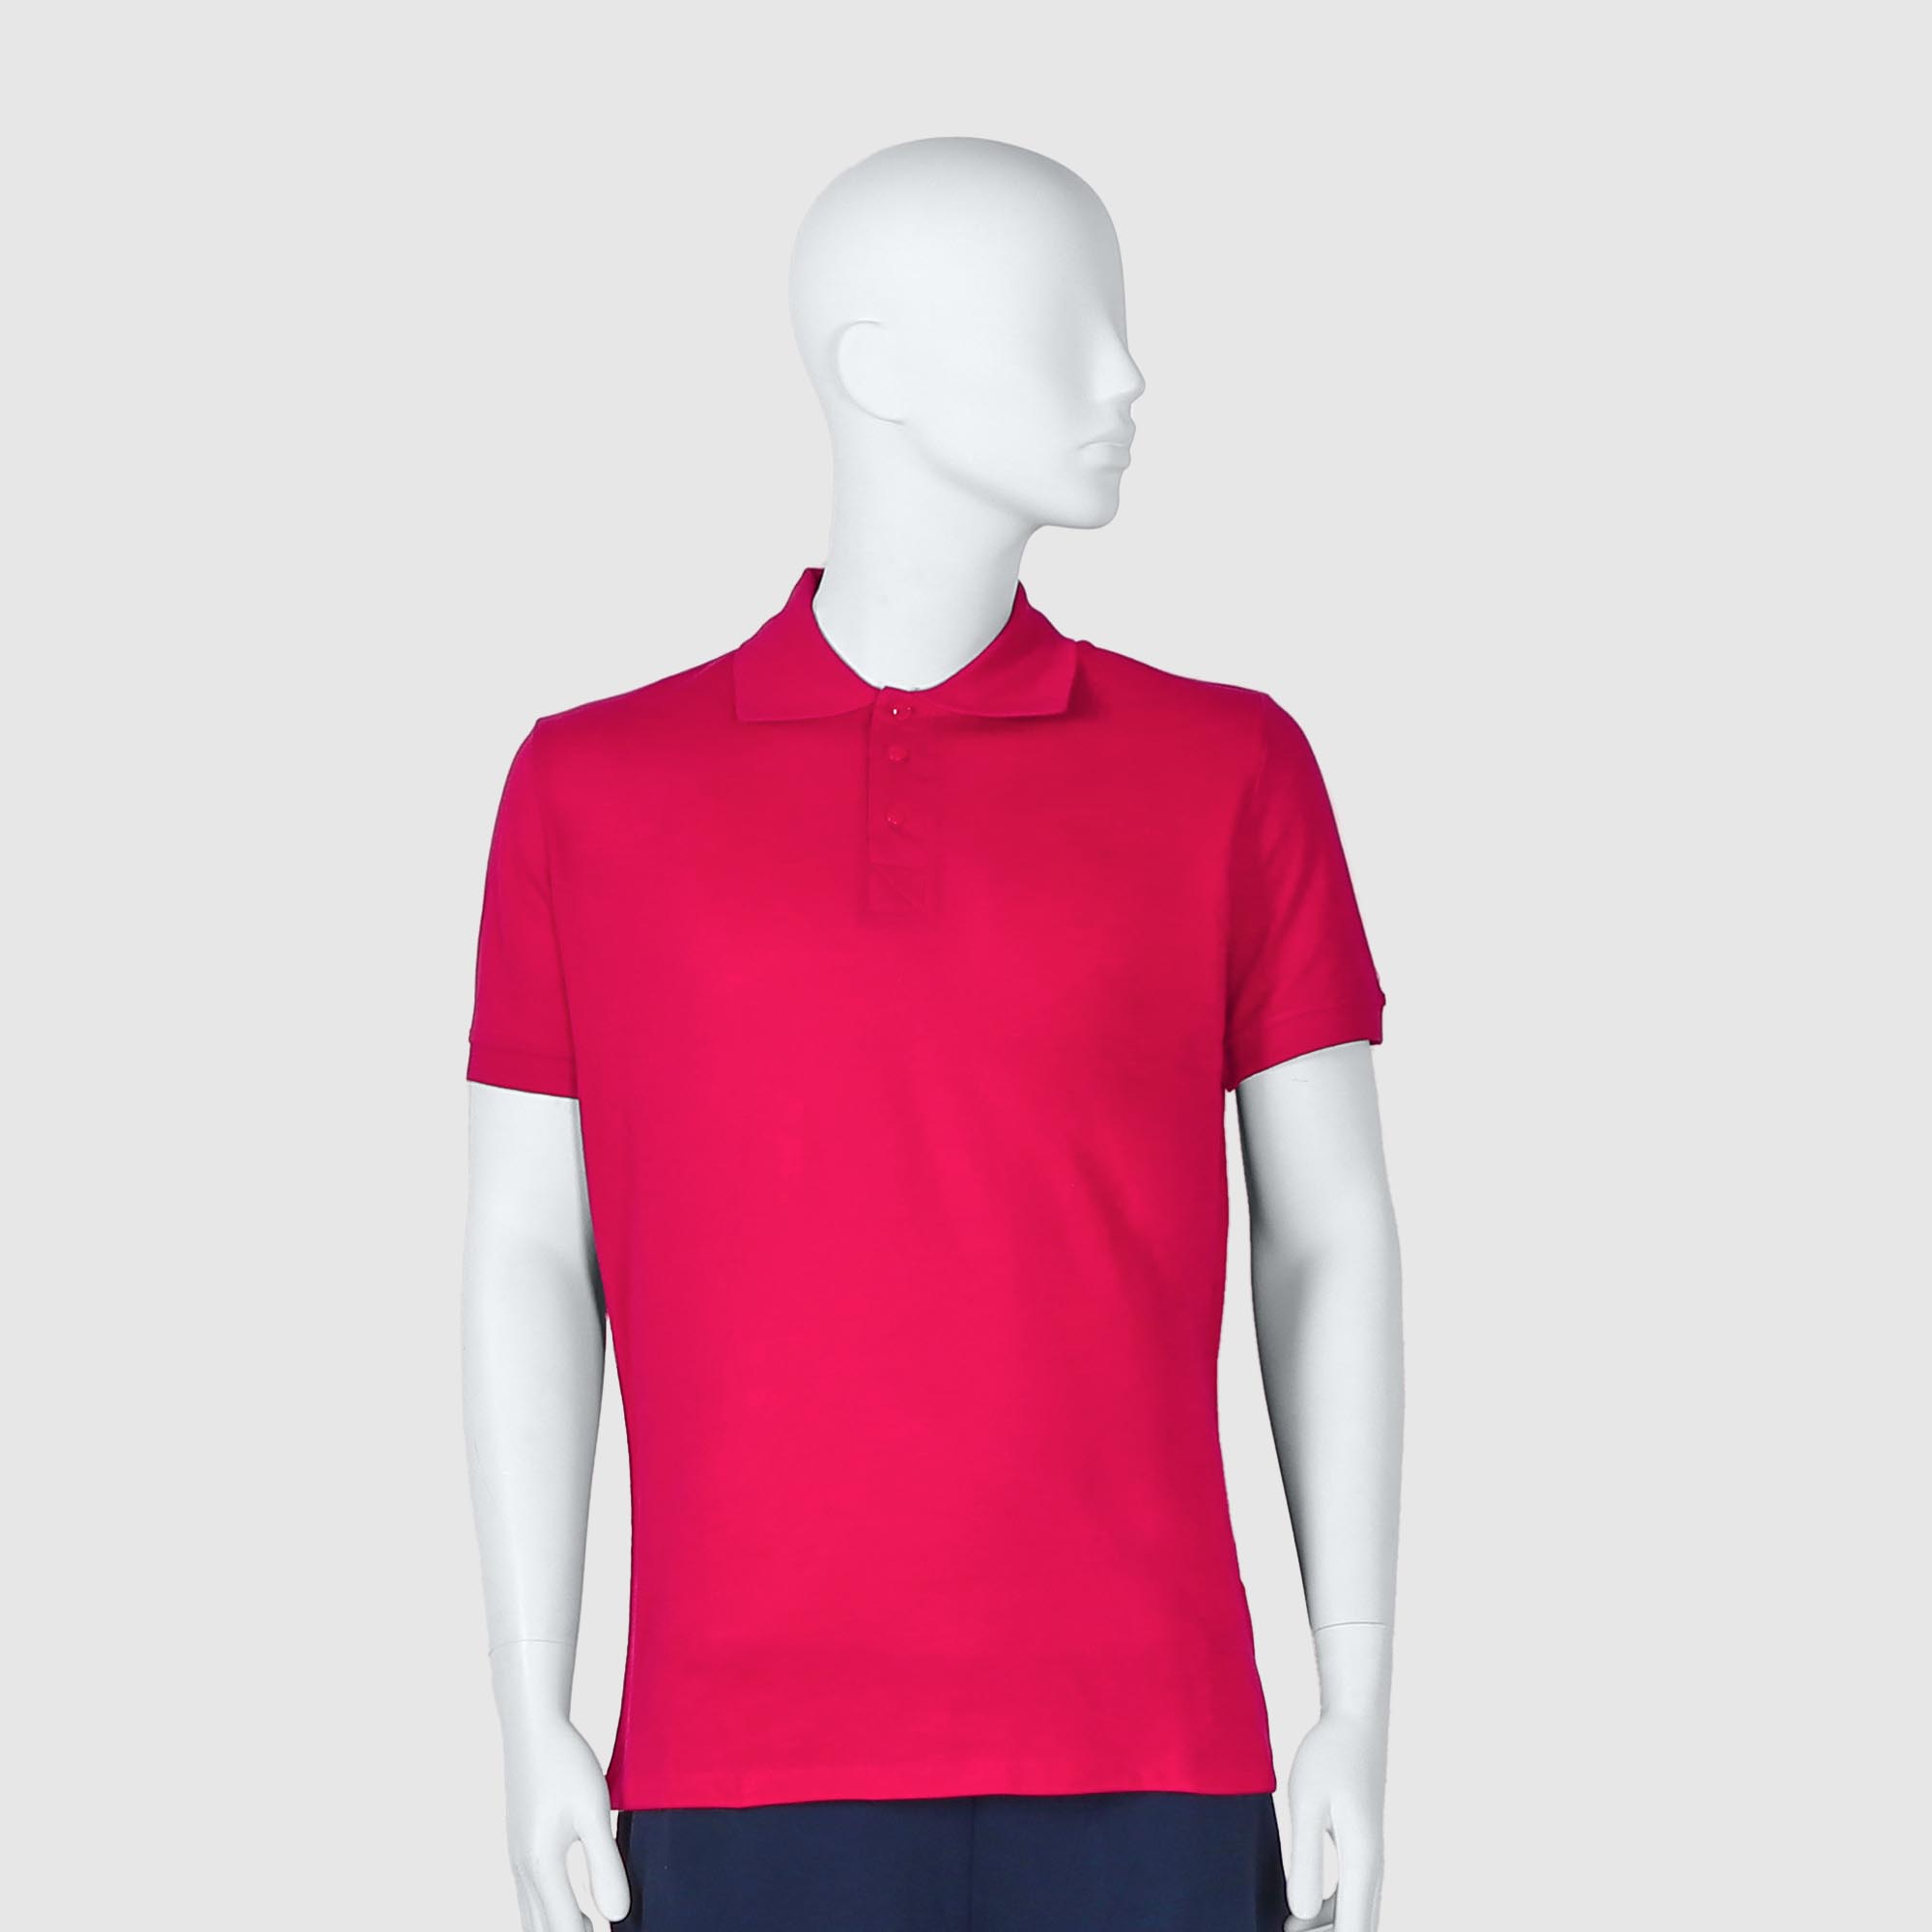 Мужская футболка-поло Diva Teks красная (DTD-08), цвет красный, размер 48-50 - фото 1